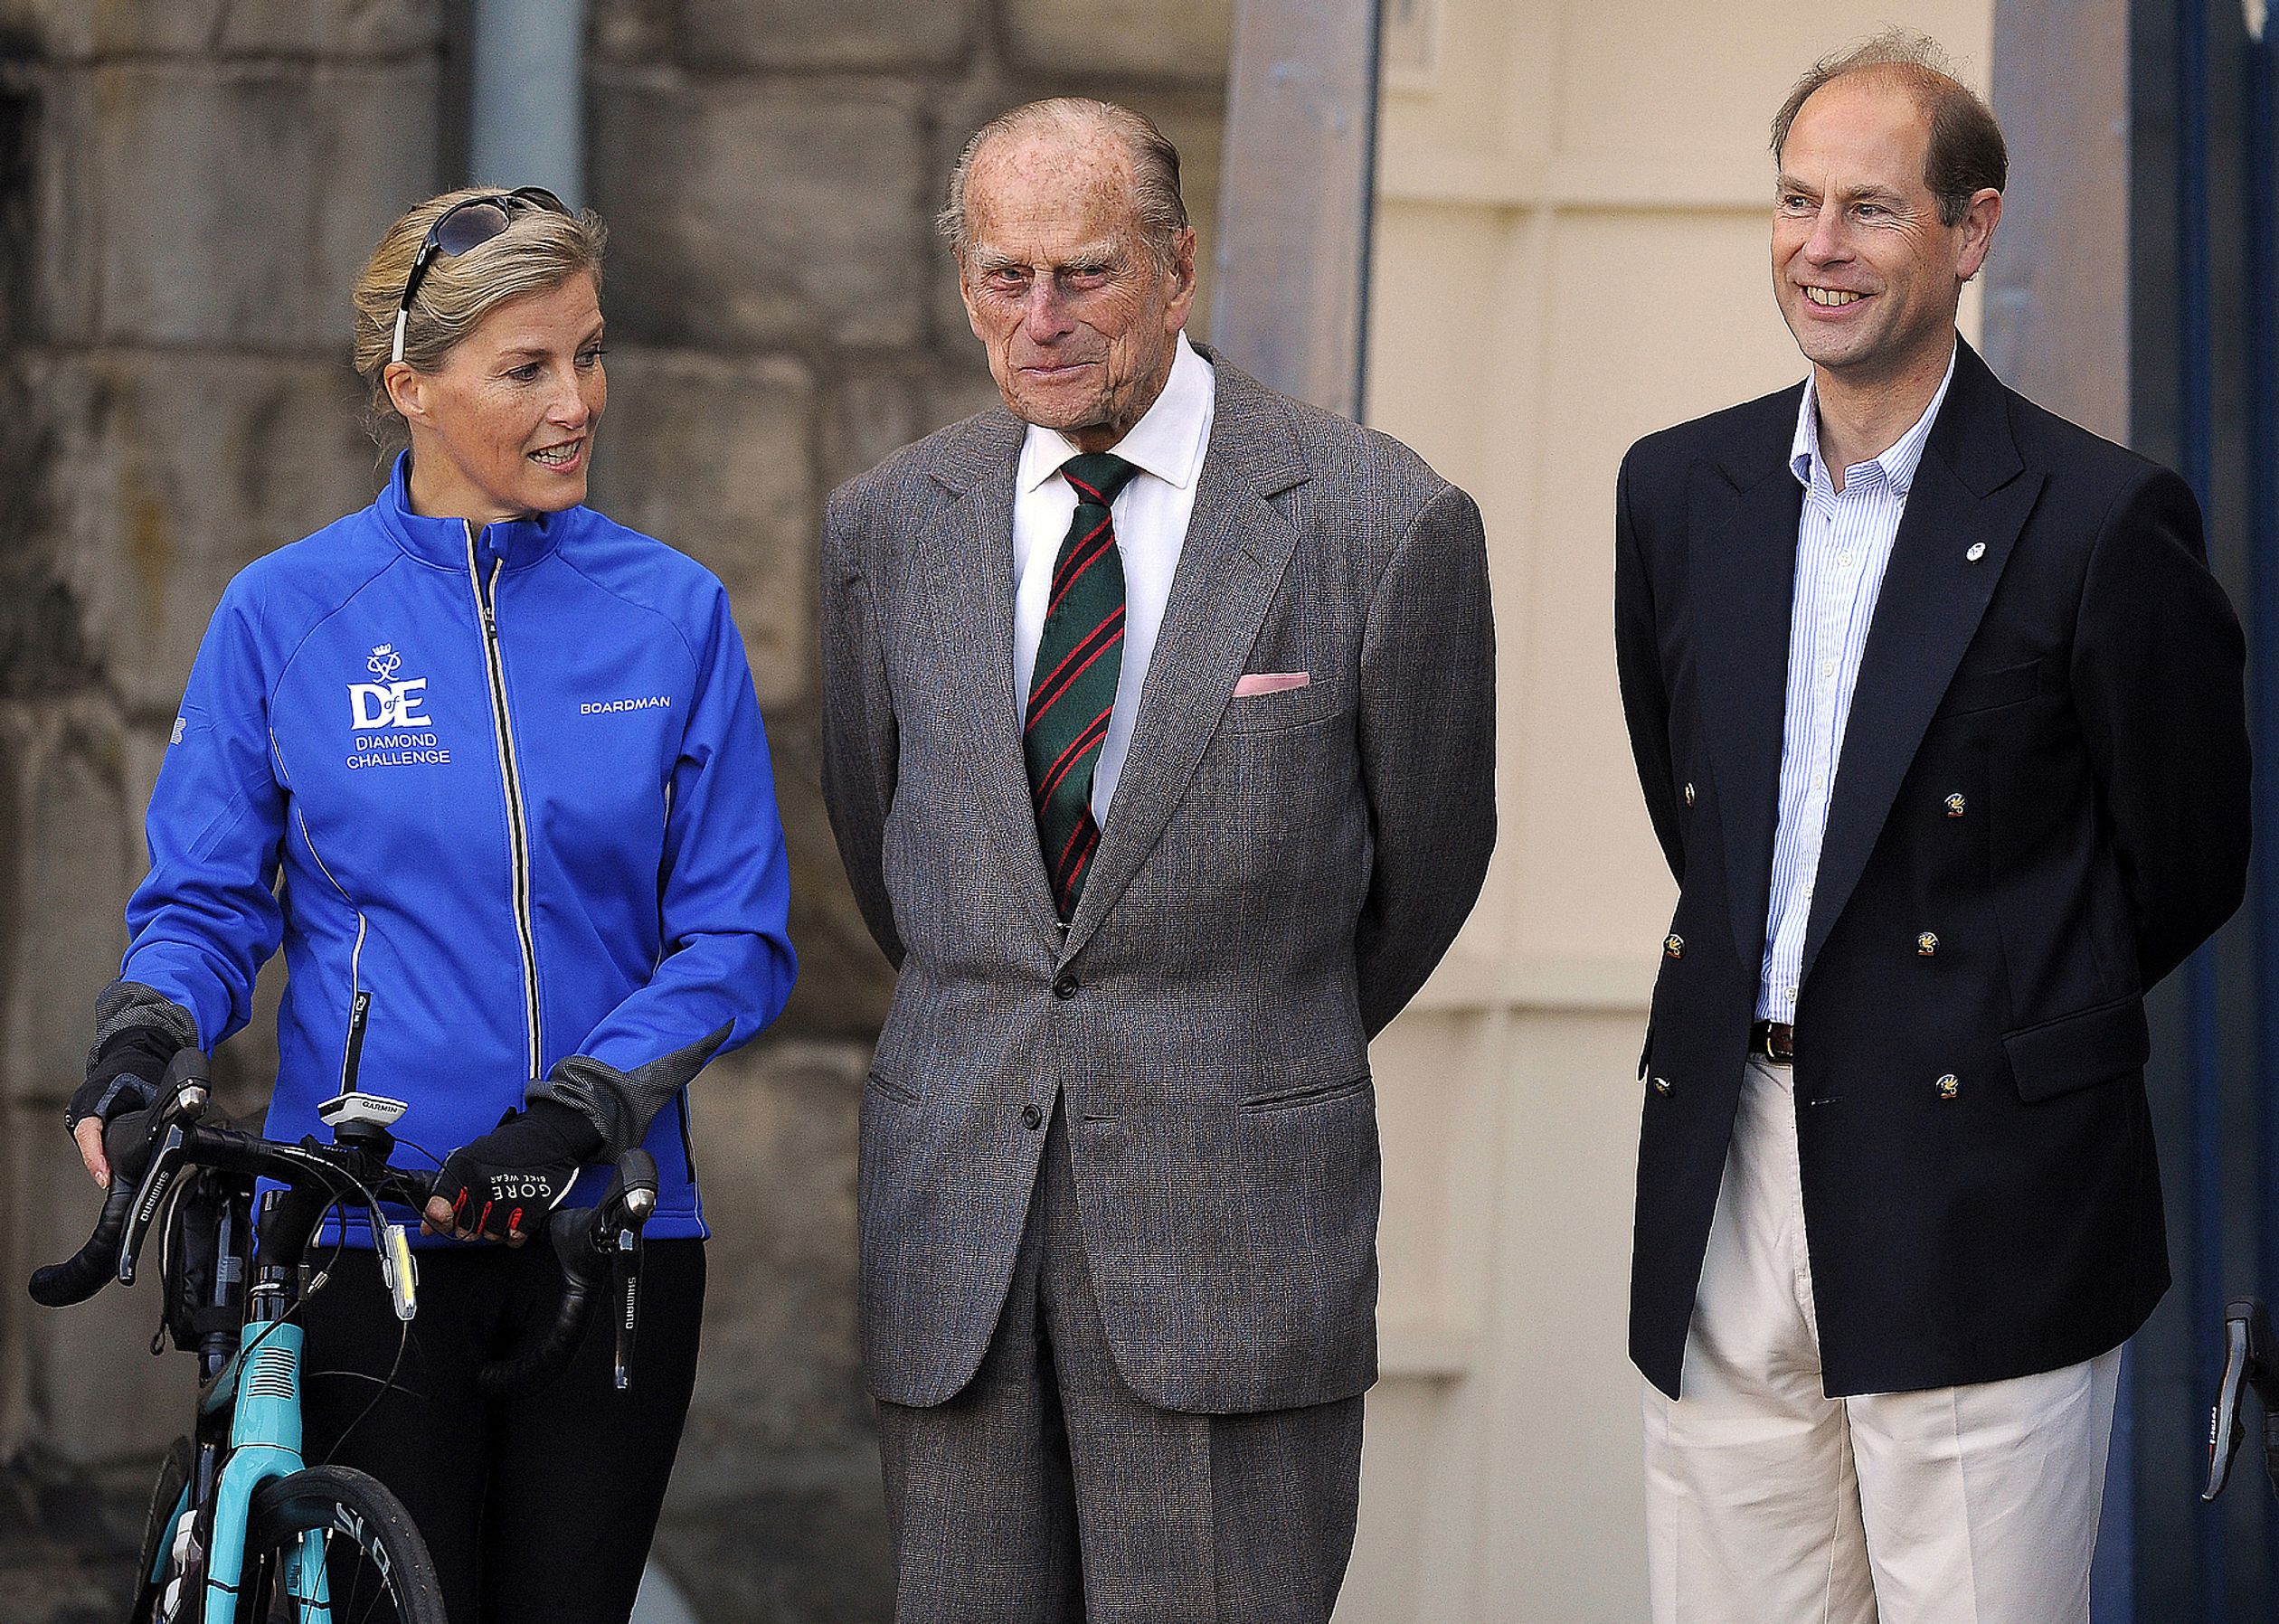 Voor de 'Duke of Edinburgh-Award' die in 2016 60 jaar bestaat, fietst prins Edwards vrouw Sophie een helemaal van paleis Holyrood (Schotland) naar Buckingham Palace. Een tocht van ruim 700 kilometer.